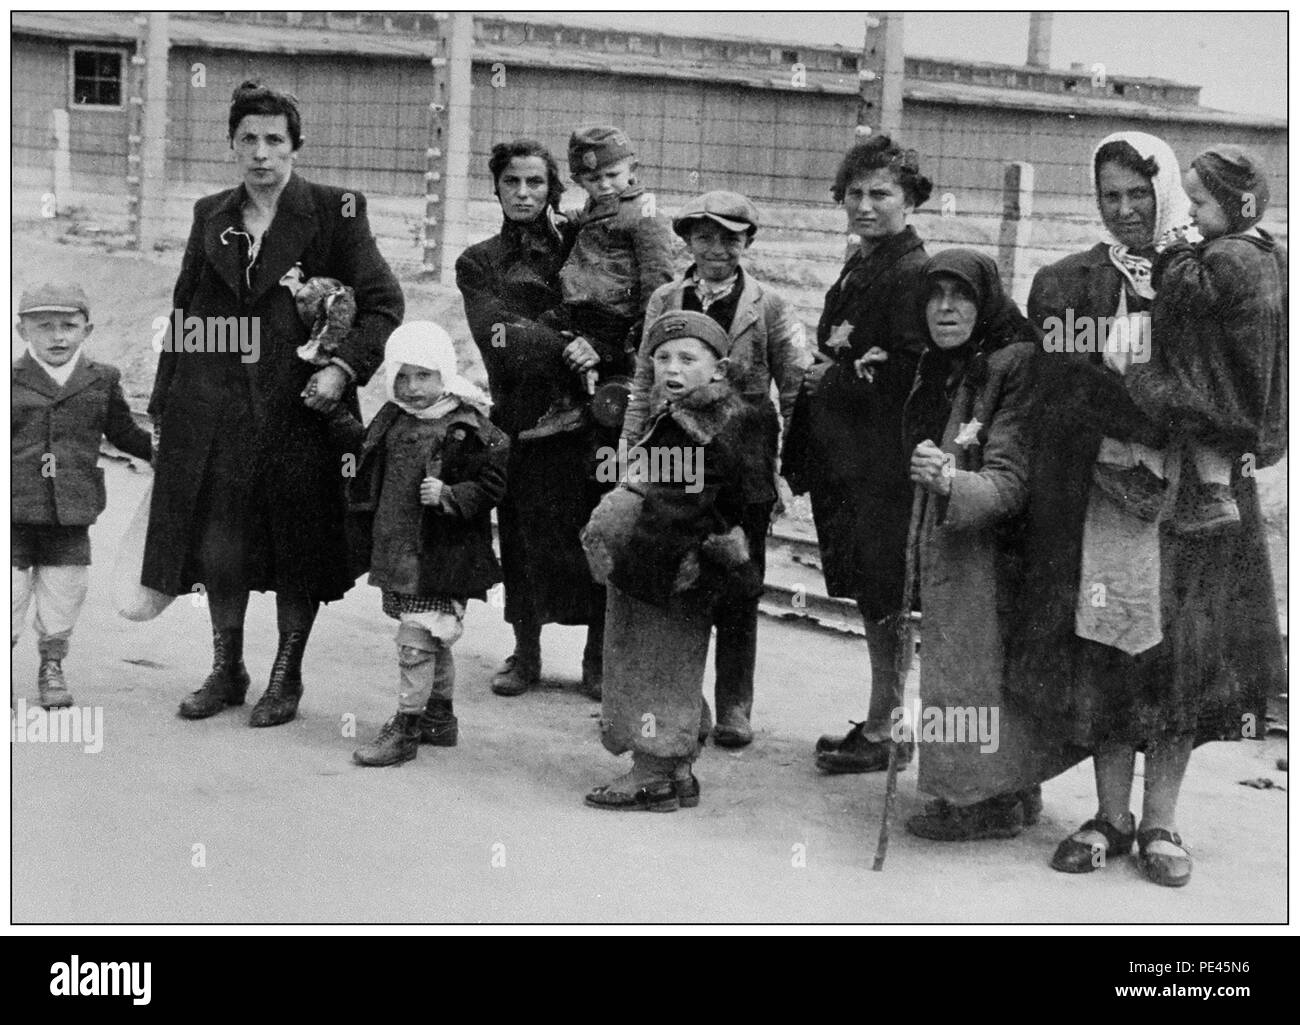 AUSCHWITZ Jüdische Kinder mit ihren Müttern und Großmüttern kommen in Auschwitz-Birkenau an. Ein deutsches Konzentrations- und Vernichtungslager der Nazis von WW2. Die größte Gruppe der Deportierten waren jüdische Kinder. Sie wurden Anfang 1942 zusammen mit Erwachsenen als Teil der „endgültigen Lösung der jüdischen Frage“ dorthin geschickt Die totale Zerstörung der jüdischen Bevölkerung Europas...das Konzentrationslager Auschwitz war ein Netzwerk von deutschen Nazi-Konzentrationslagern und Vernichtungslagern, die vom Dritten Reich in polnischen Gebieten errichtet und betrieben wurden, die während des Zweiten Weltkriegs von Nazi-Deutschland annektiert wurden Stockfoto